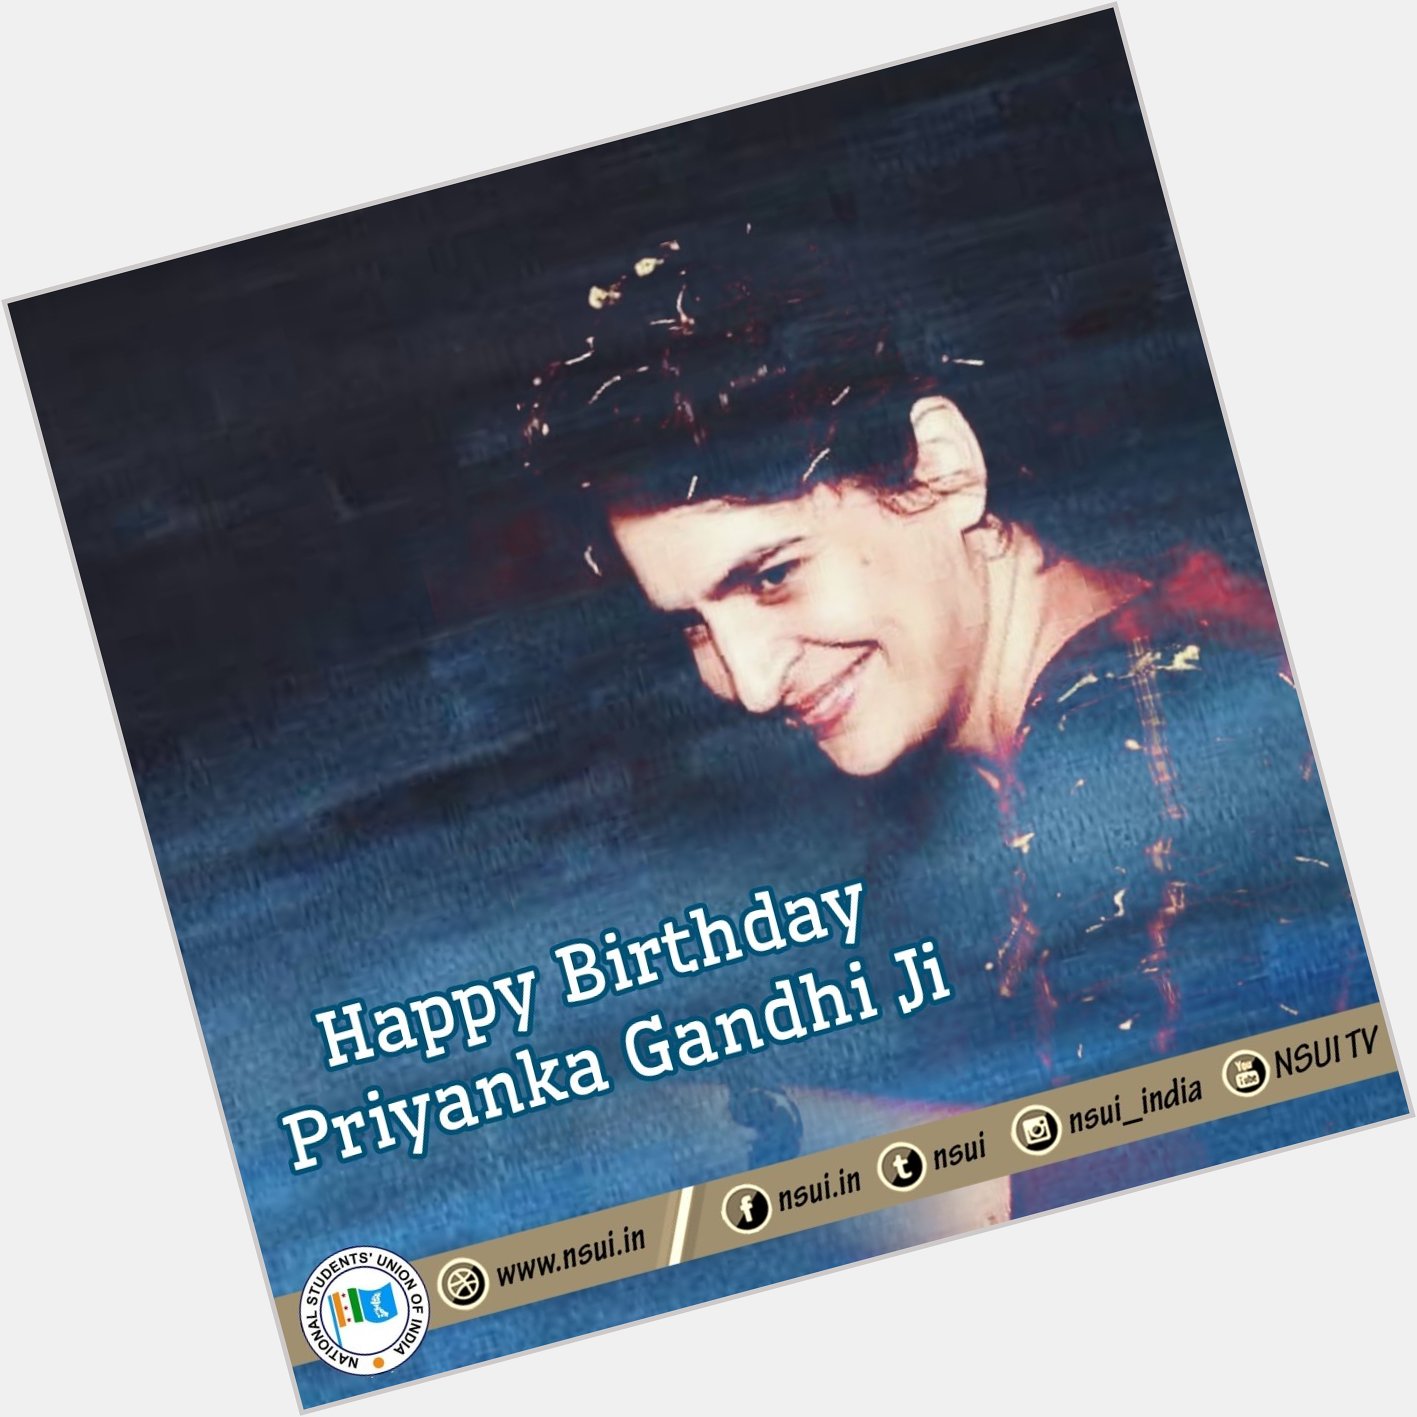 Wishing priyanka gandhi a very special happy birthday 